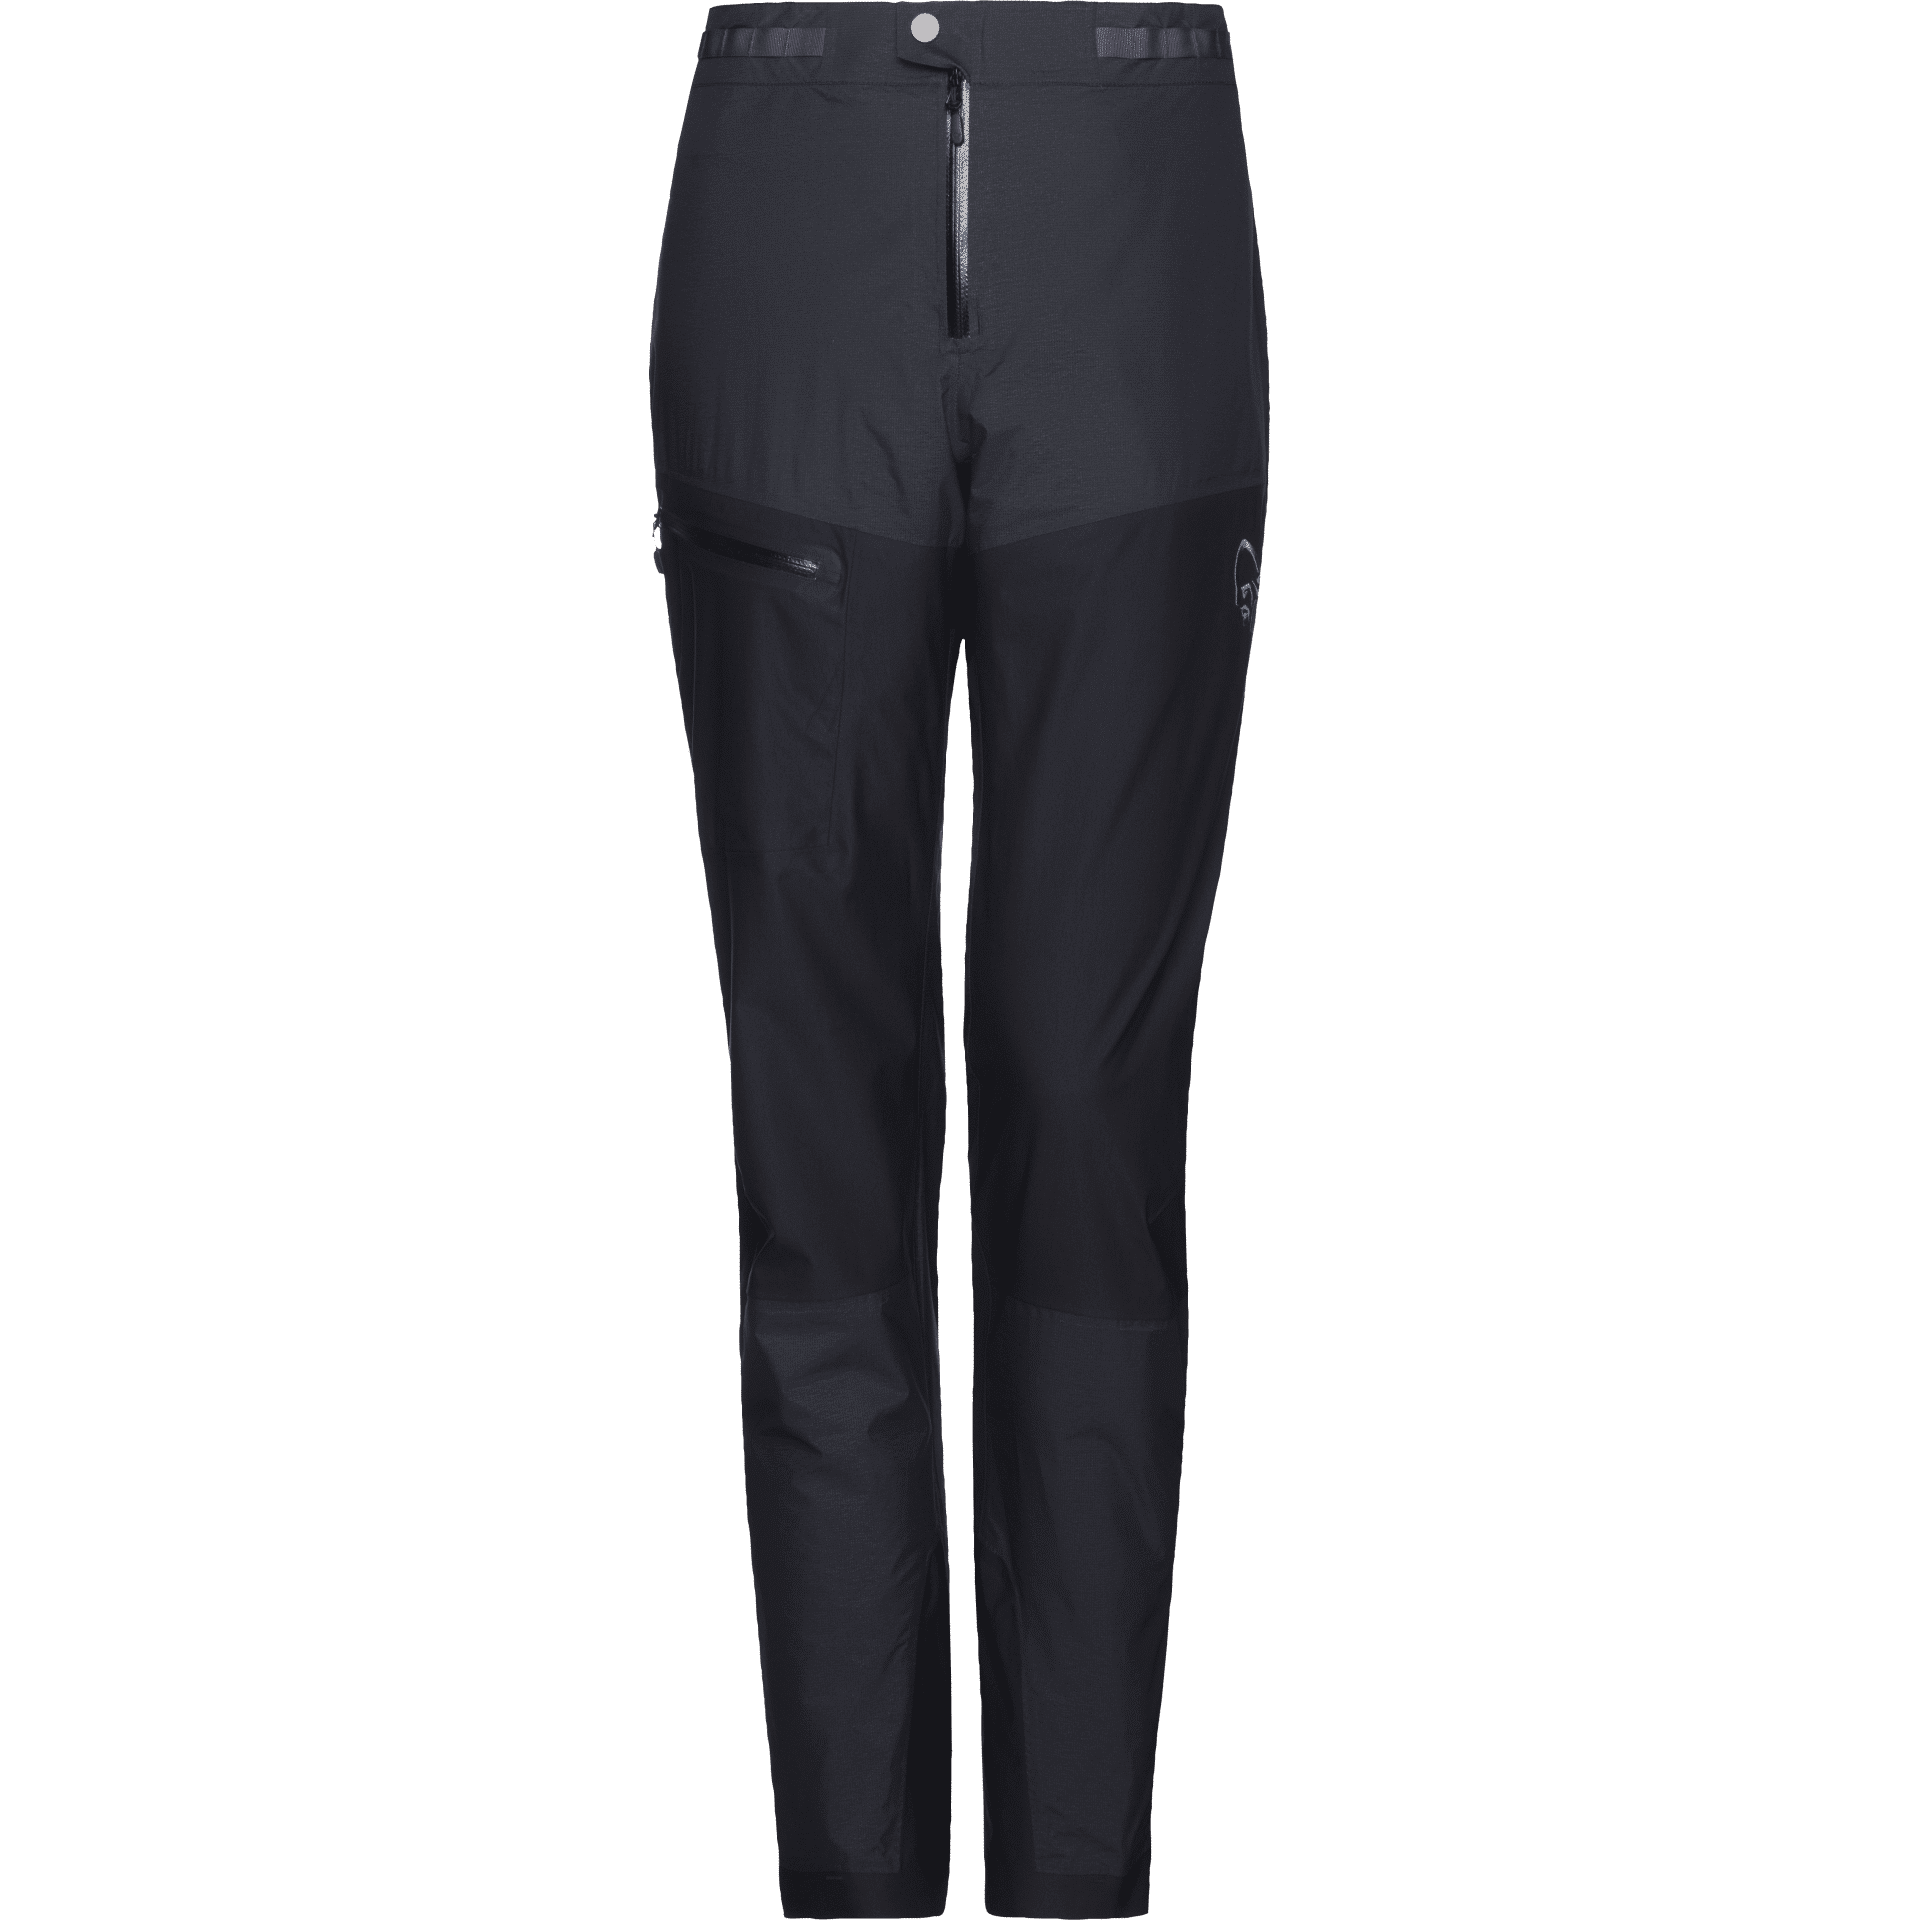 Norrøna - Bitihorn Dri1 Pants - Pantaloni impermeabili - Donna